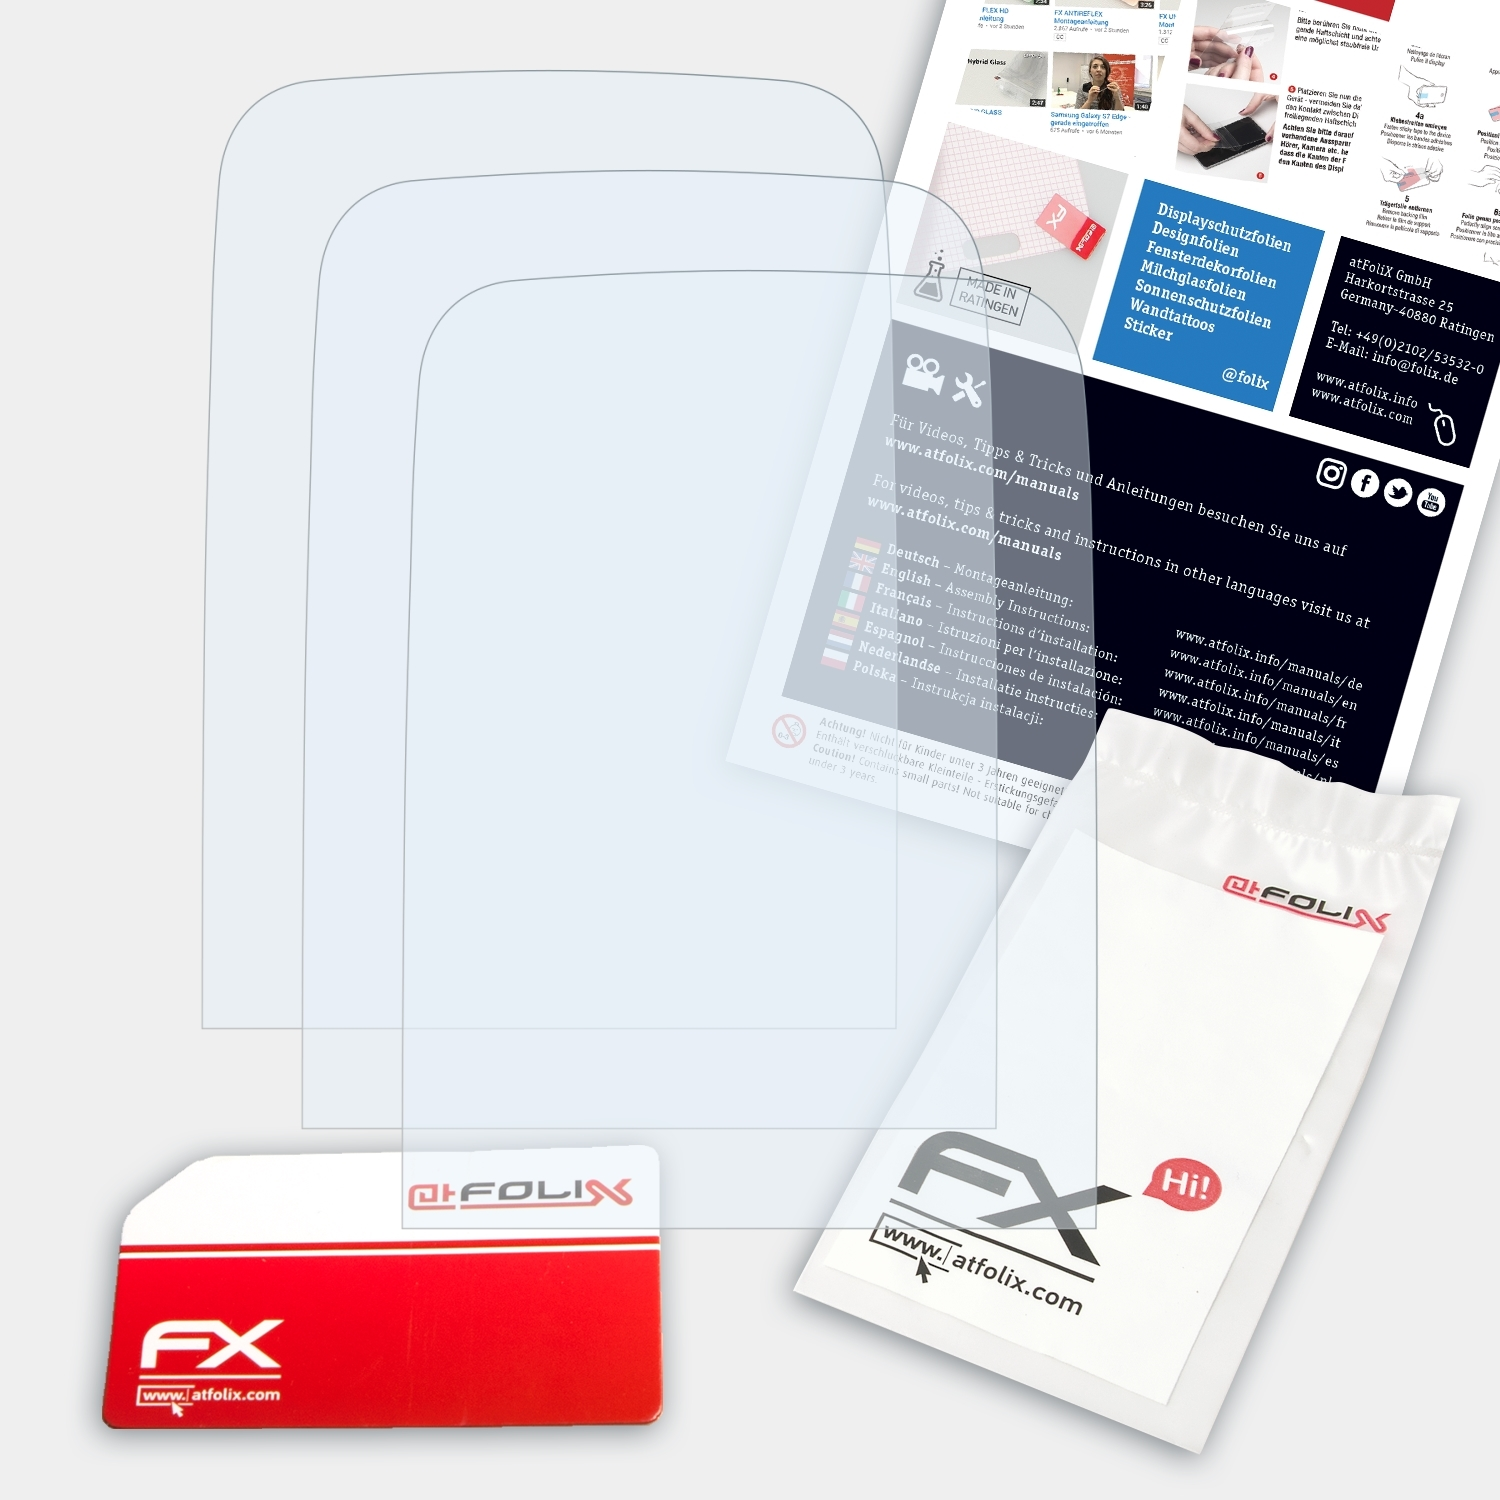 ATFOLIX 3x FX-Clear Displayschutz(für 1616) Nokia